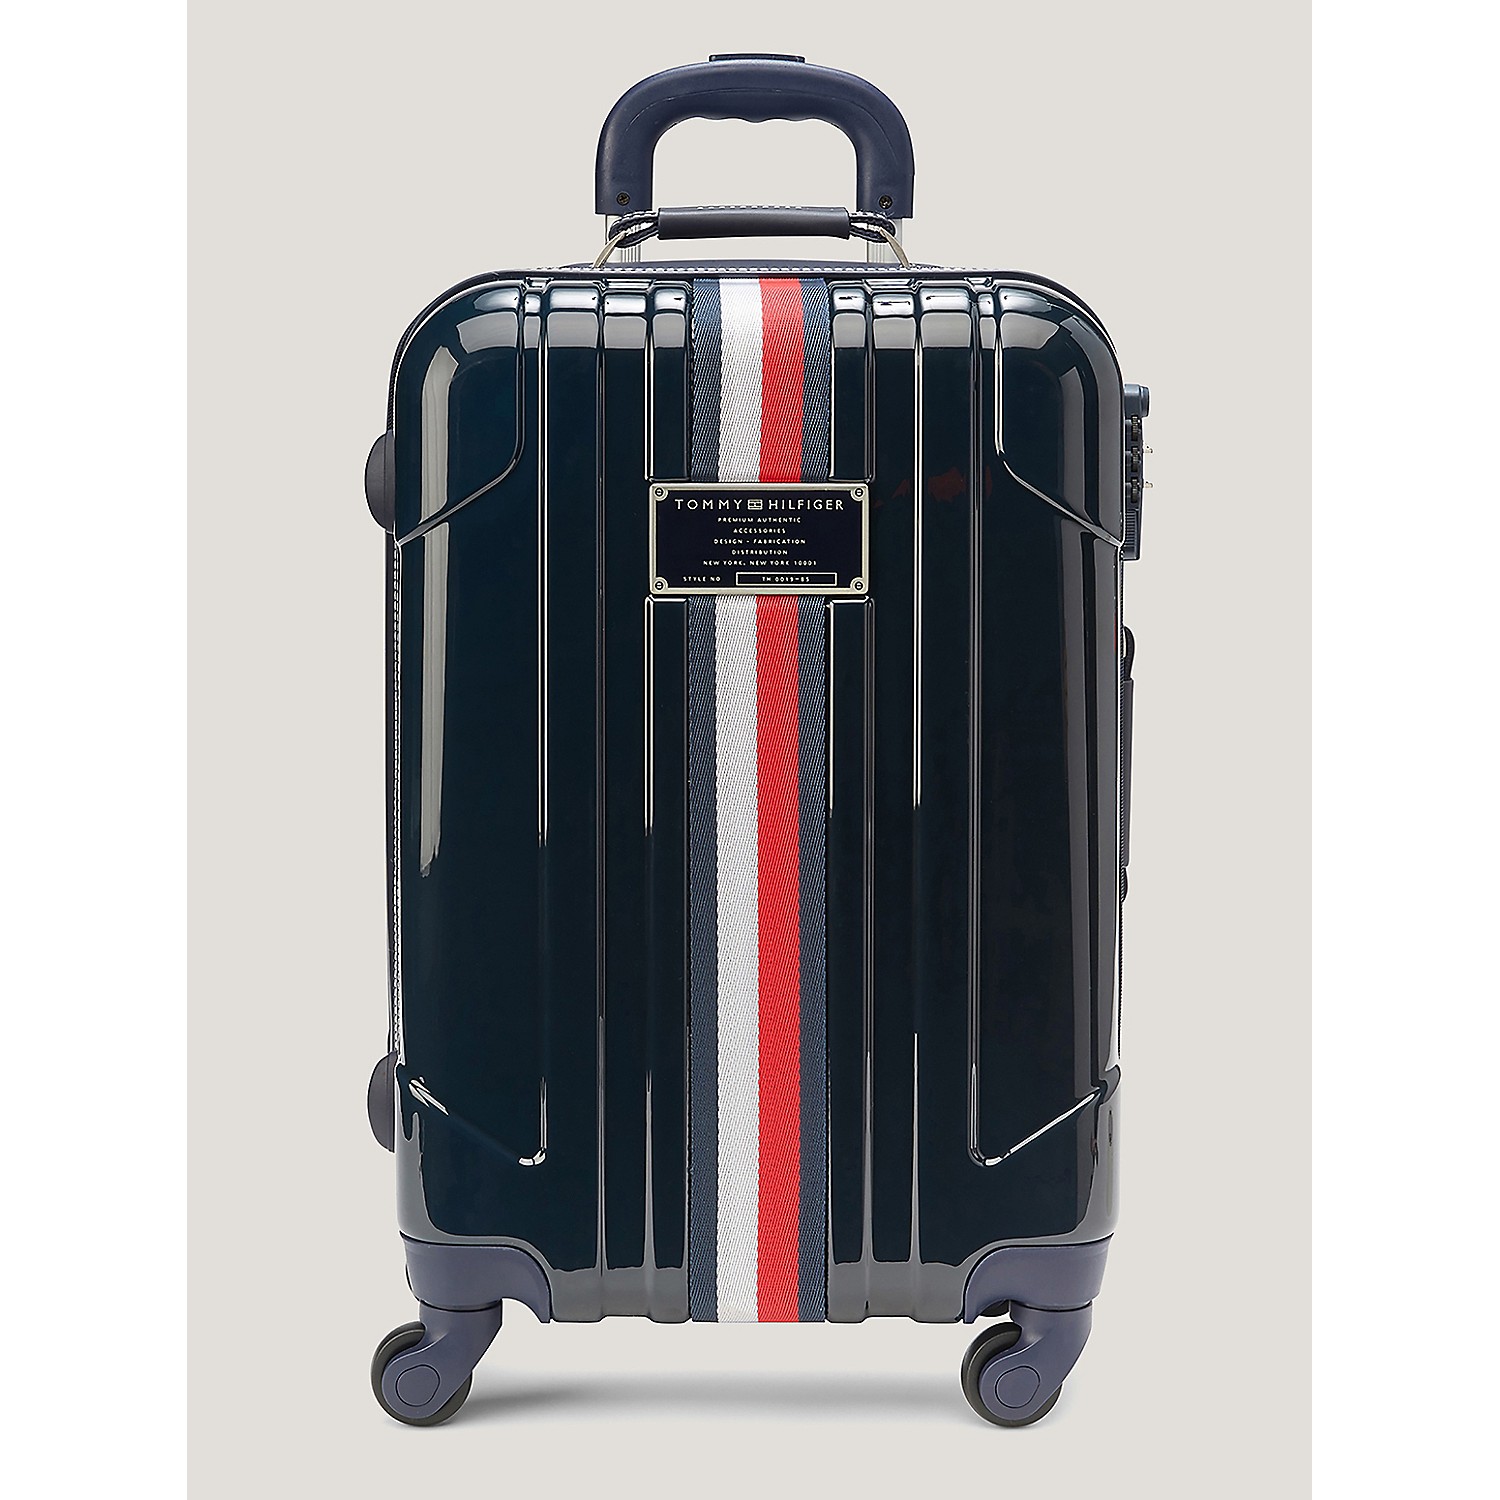 TOMMY HILFIGER 21 Hardcase Spinner Suitcase